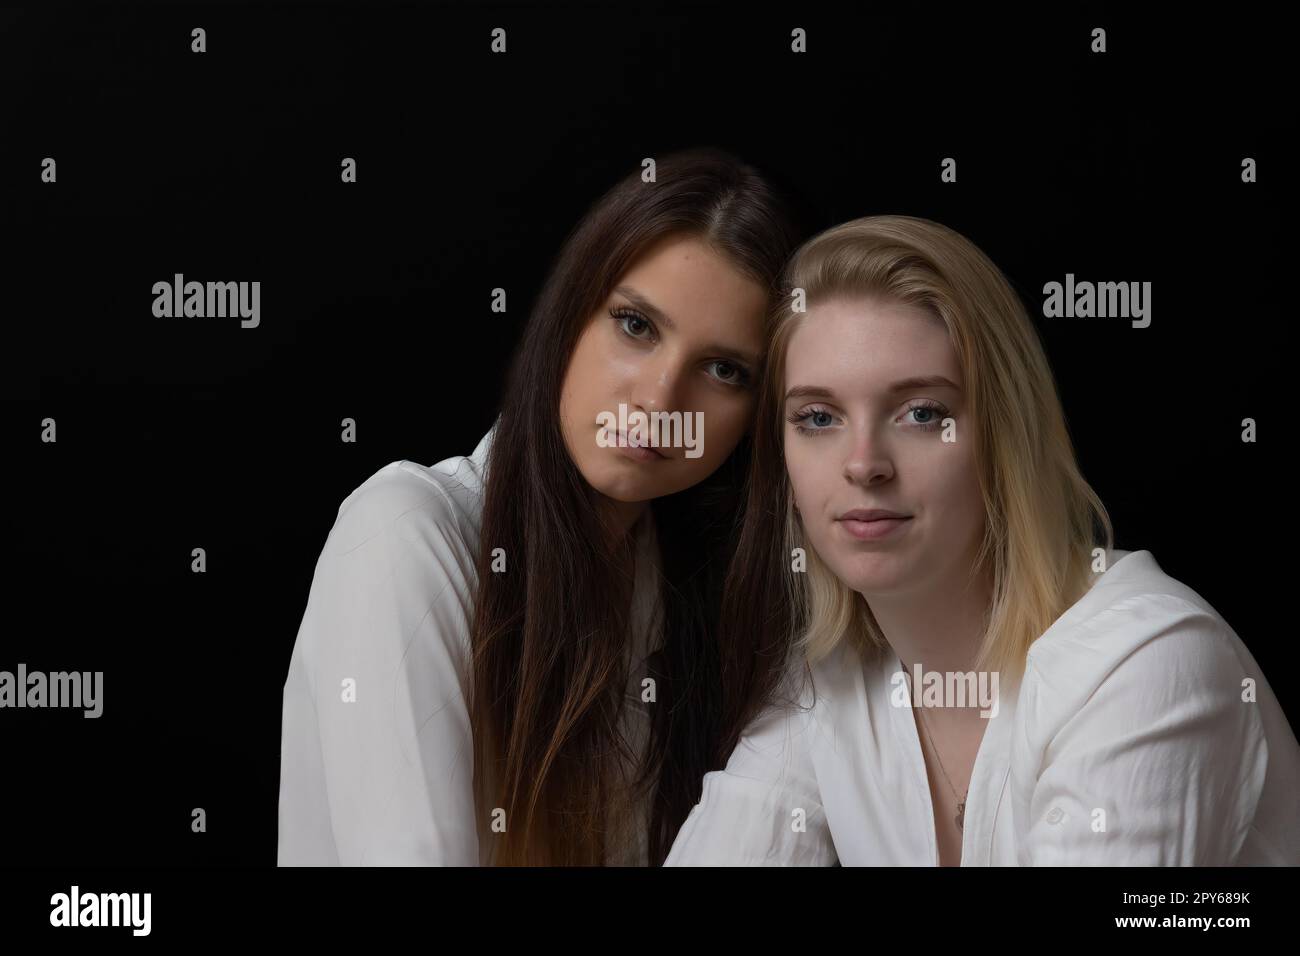 Unauffälliges Porträt von zwei schönen Mädchen. Stockfoto